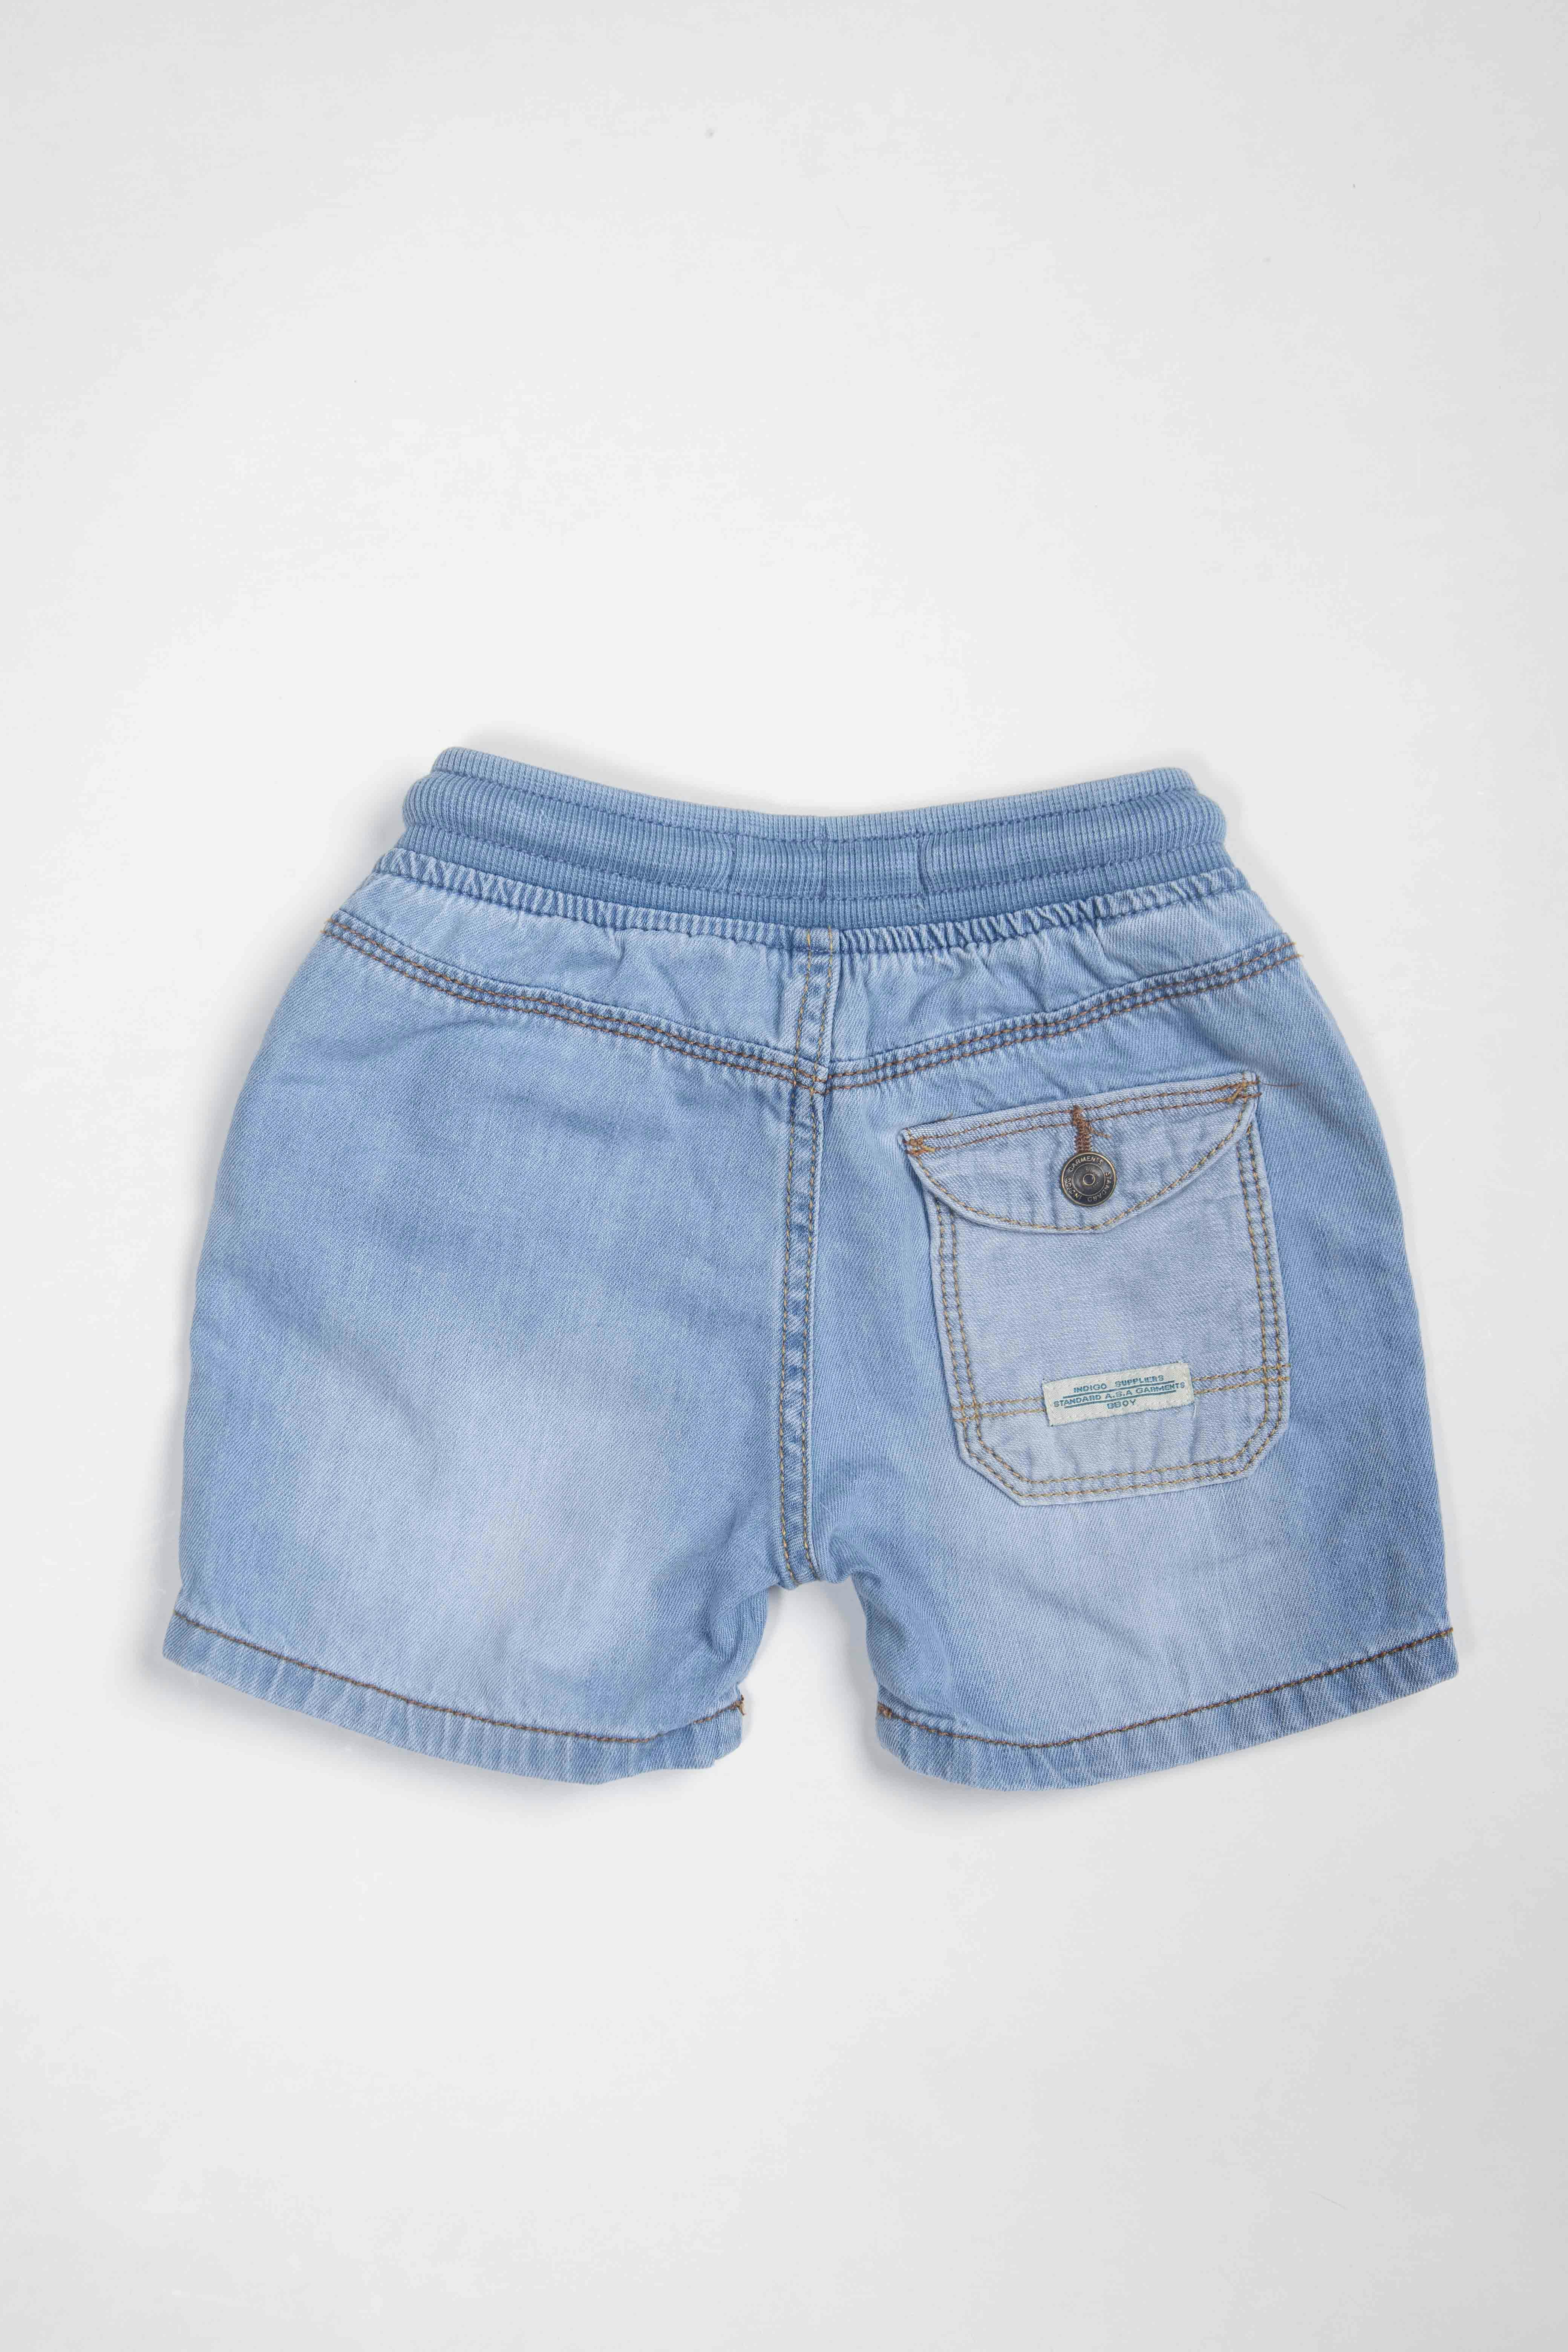 short de jean 98% algodon, elastico en la cintura con cinta para amarrar - Zara